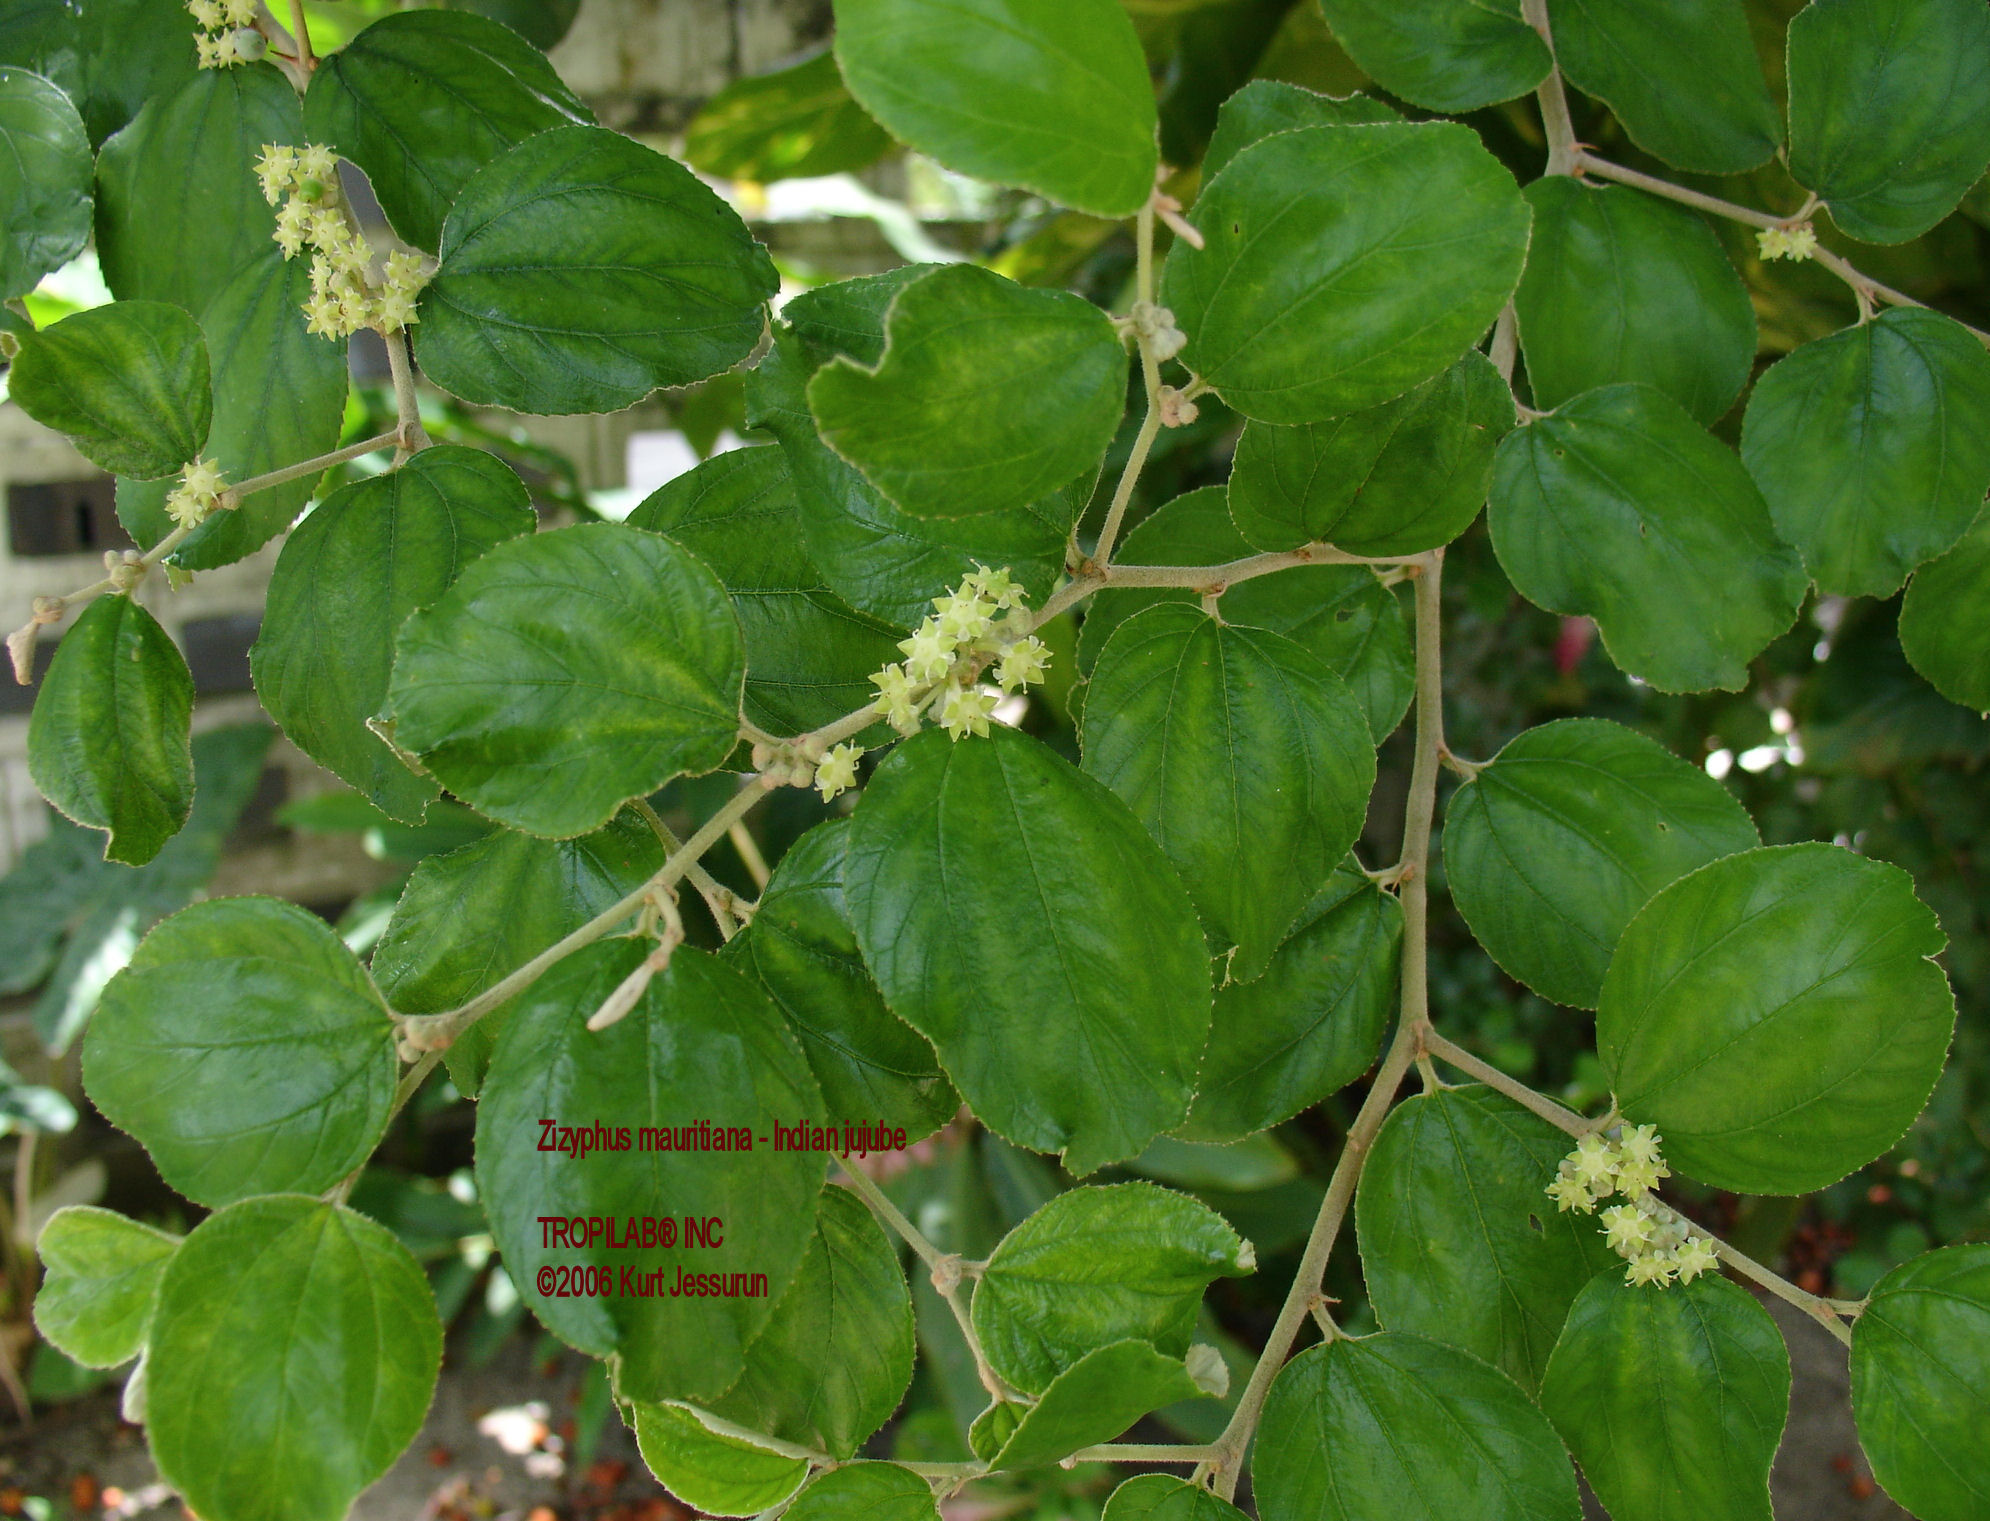 Zizyphus mauritiana - Indian jujube leaves - Tropilab